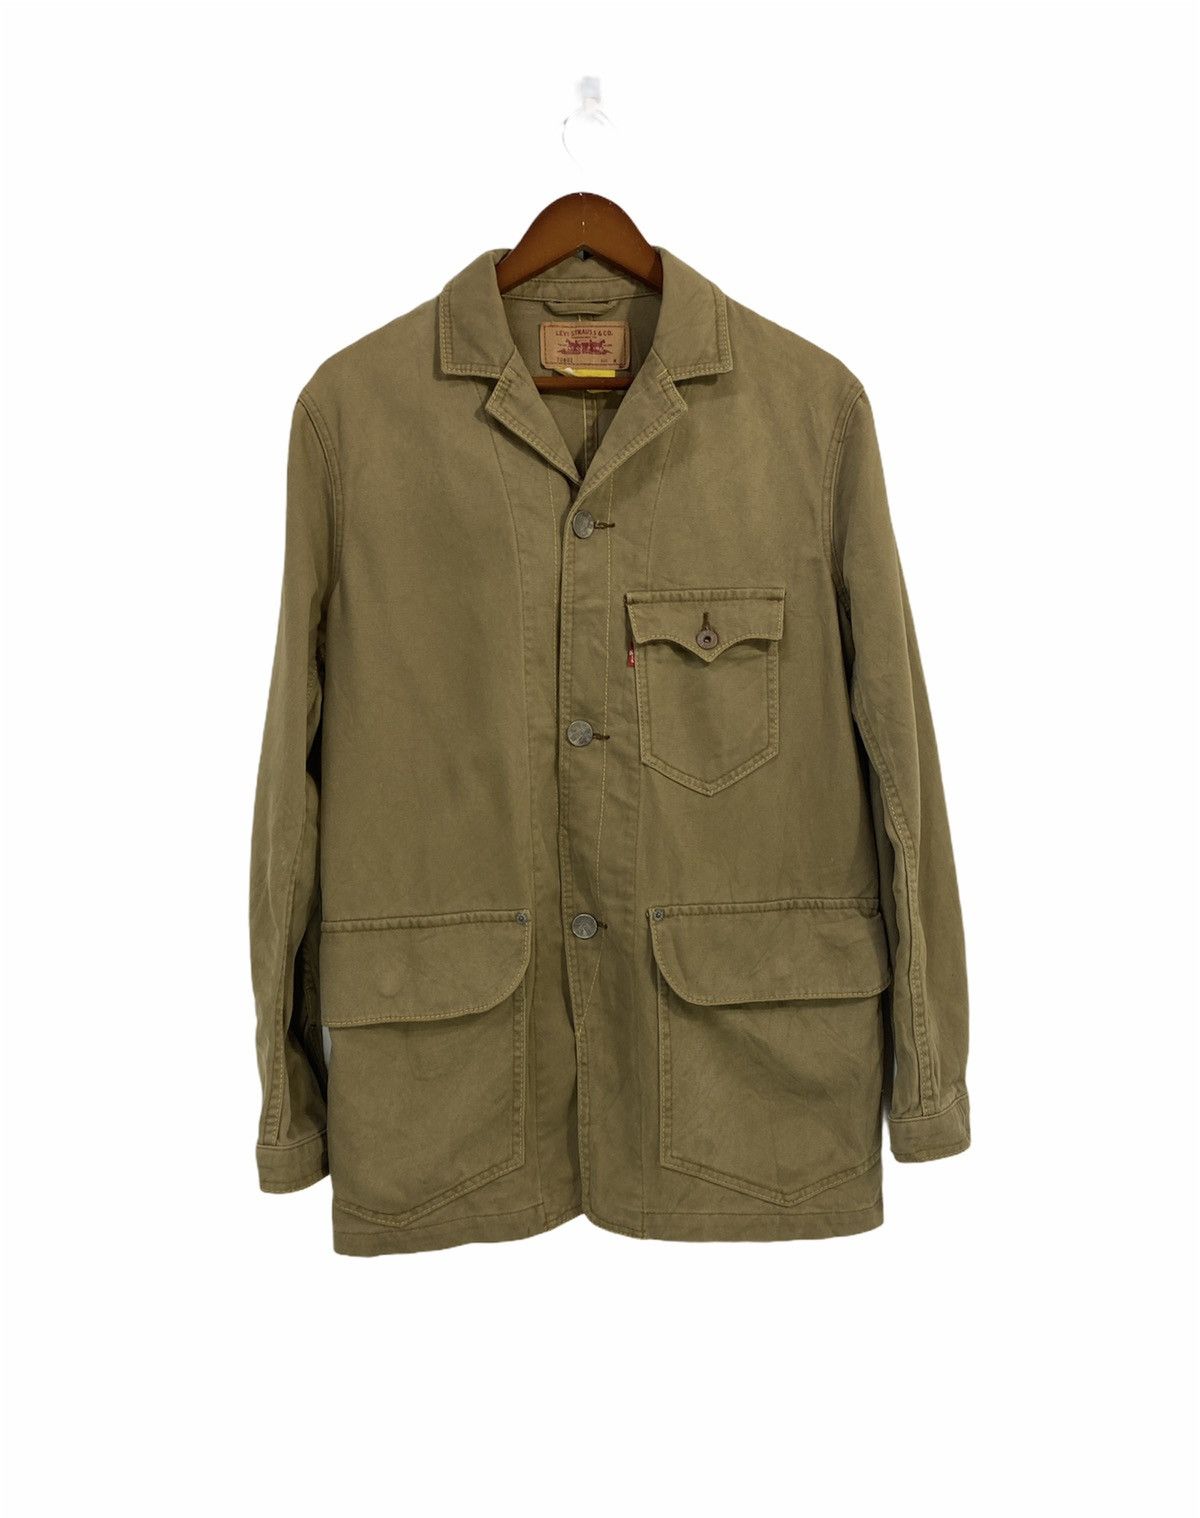 Vintage Levi’s Chore Jacket Design 3 Pocket Nice Design - 1